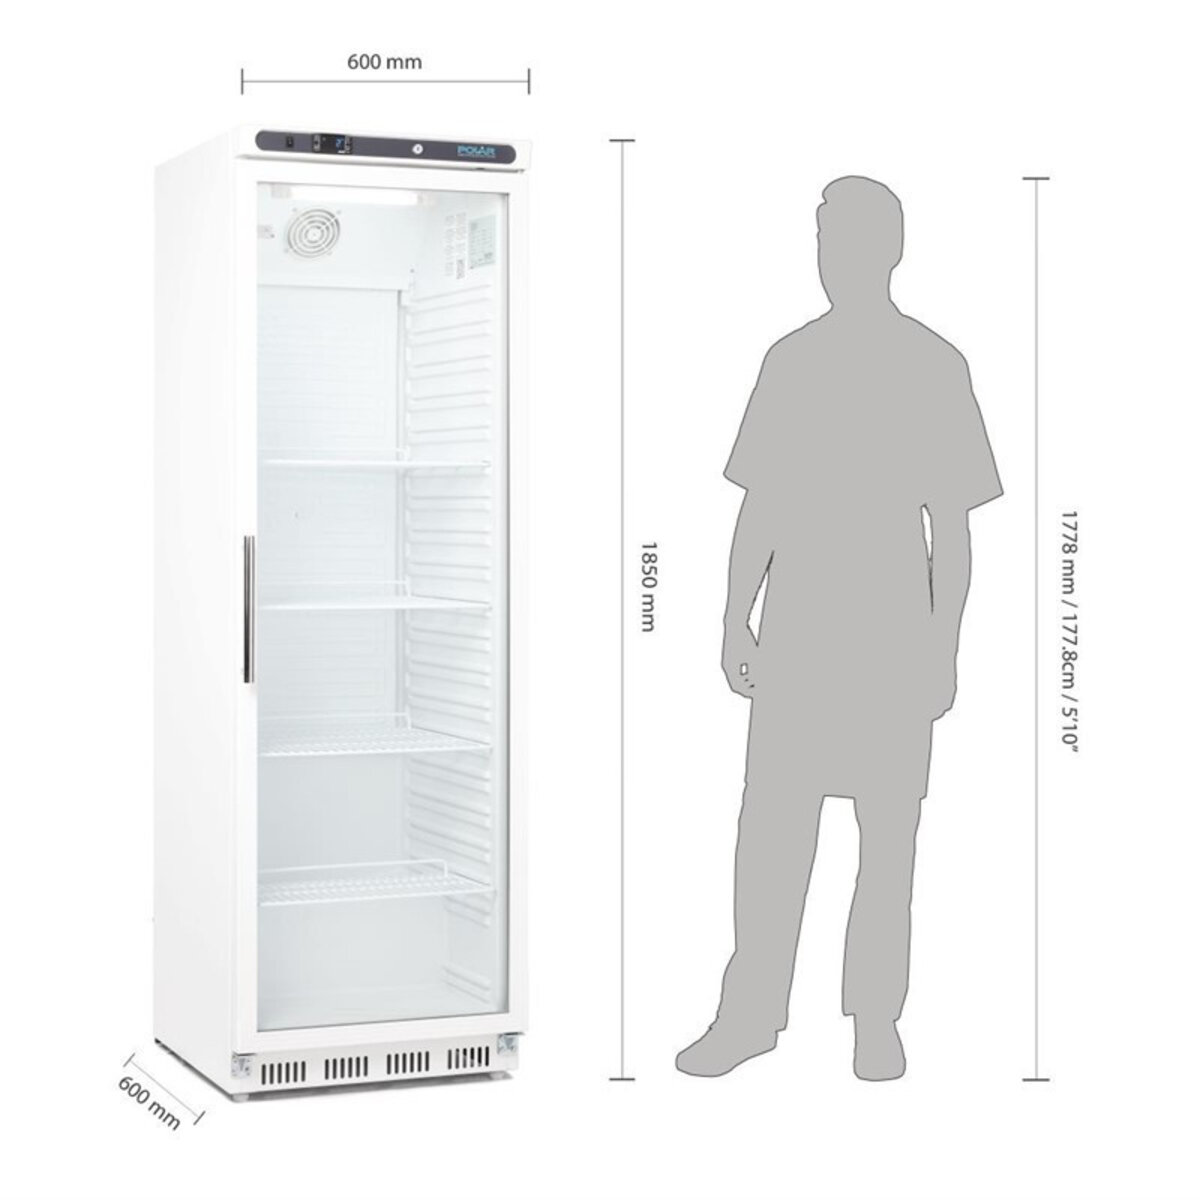 Réfrigérateur 1 porte Polar Mini Frigo Vitré Professionnel à Boissons - -  R600a - Acier inoxydable146430Vitrée x480x510mm